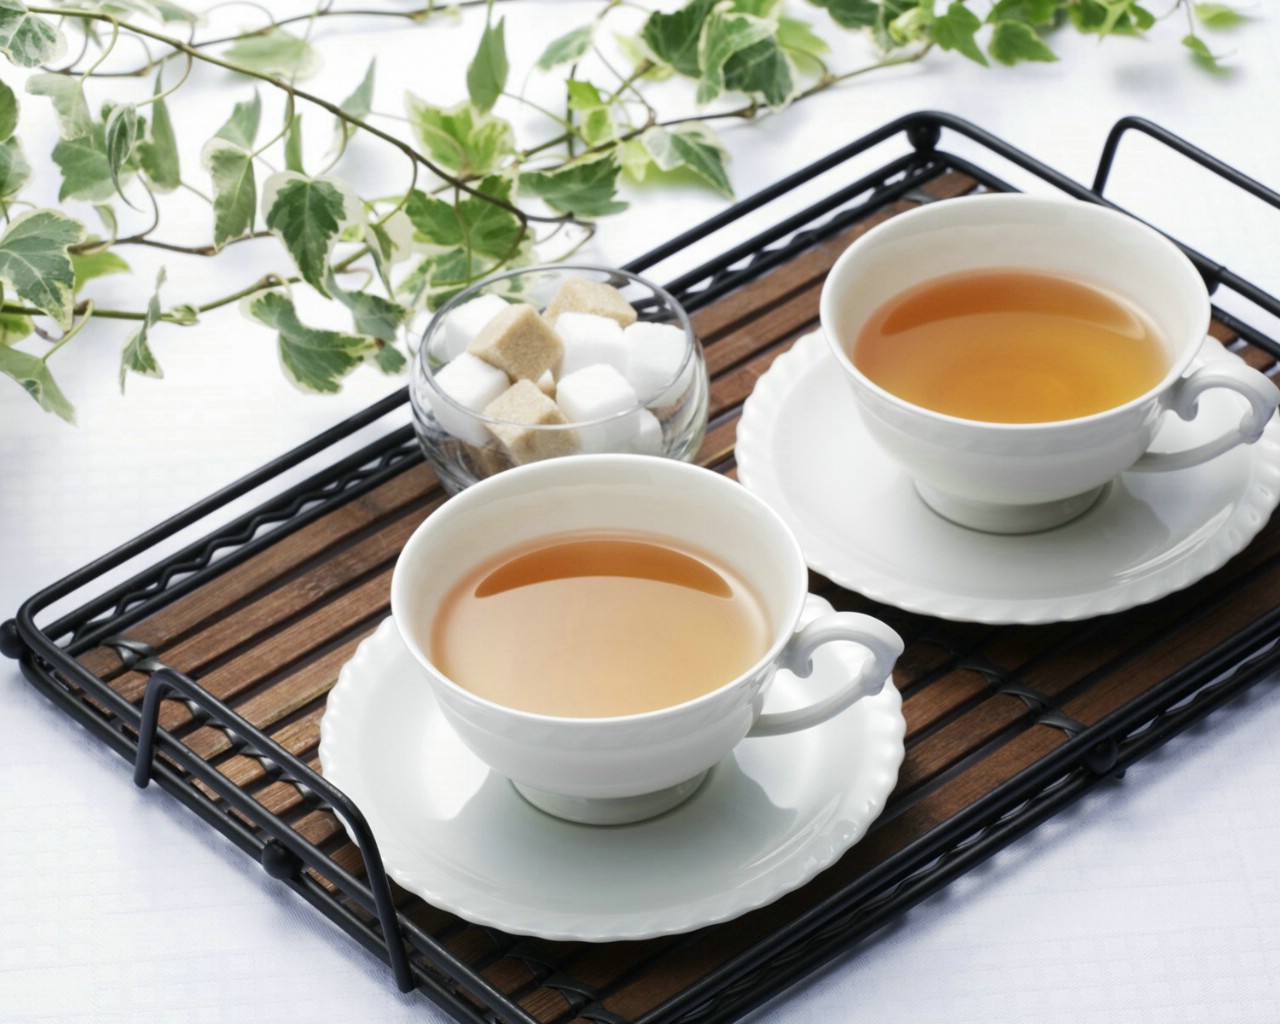 壁纸1280x1024 日本新茶图片 日本茶道摄影壁纸 日本茶道文化与健康饮品壁纸 日本茶道文化与健康饮品图片 日本茶道文化与健康饮品素材 摄影壁纸 摄影图库 摄影图片素材桌面壁纸